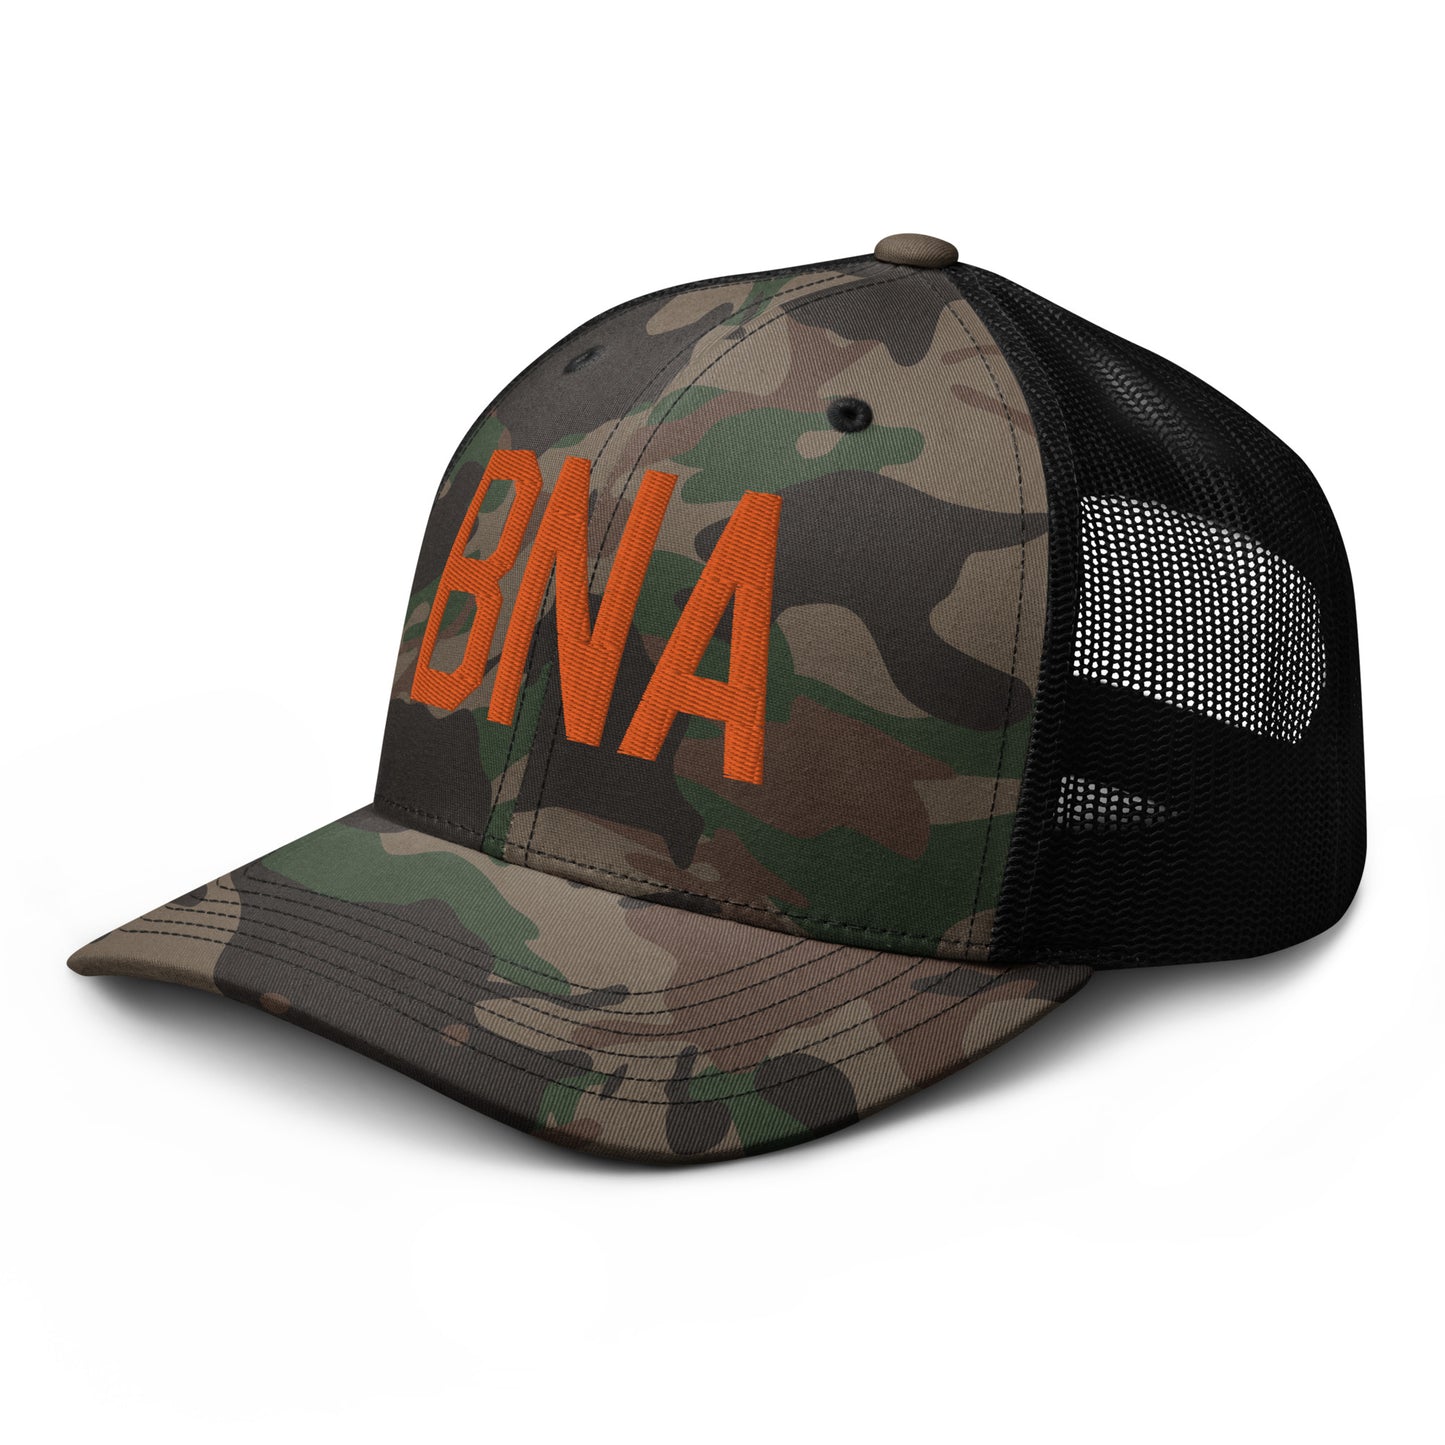 Airport Code Camouflage Trucker Hat - Orange • BNA Nashville • YHM Designs - Image 01